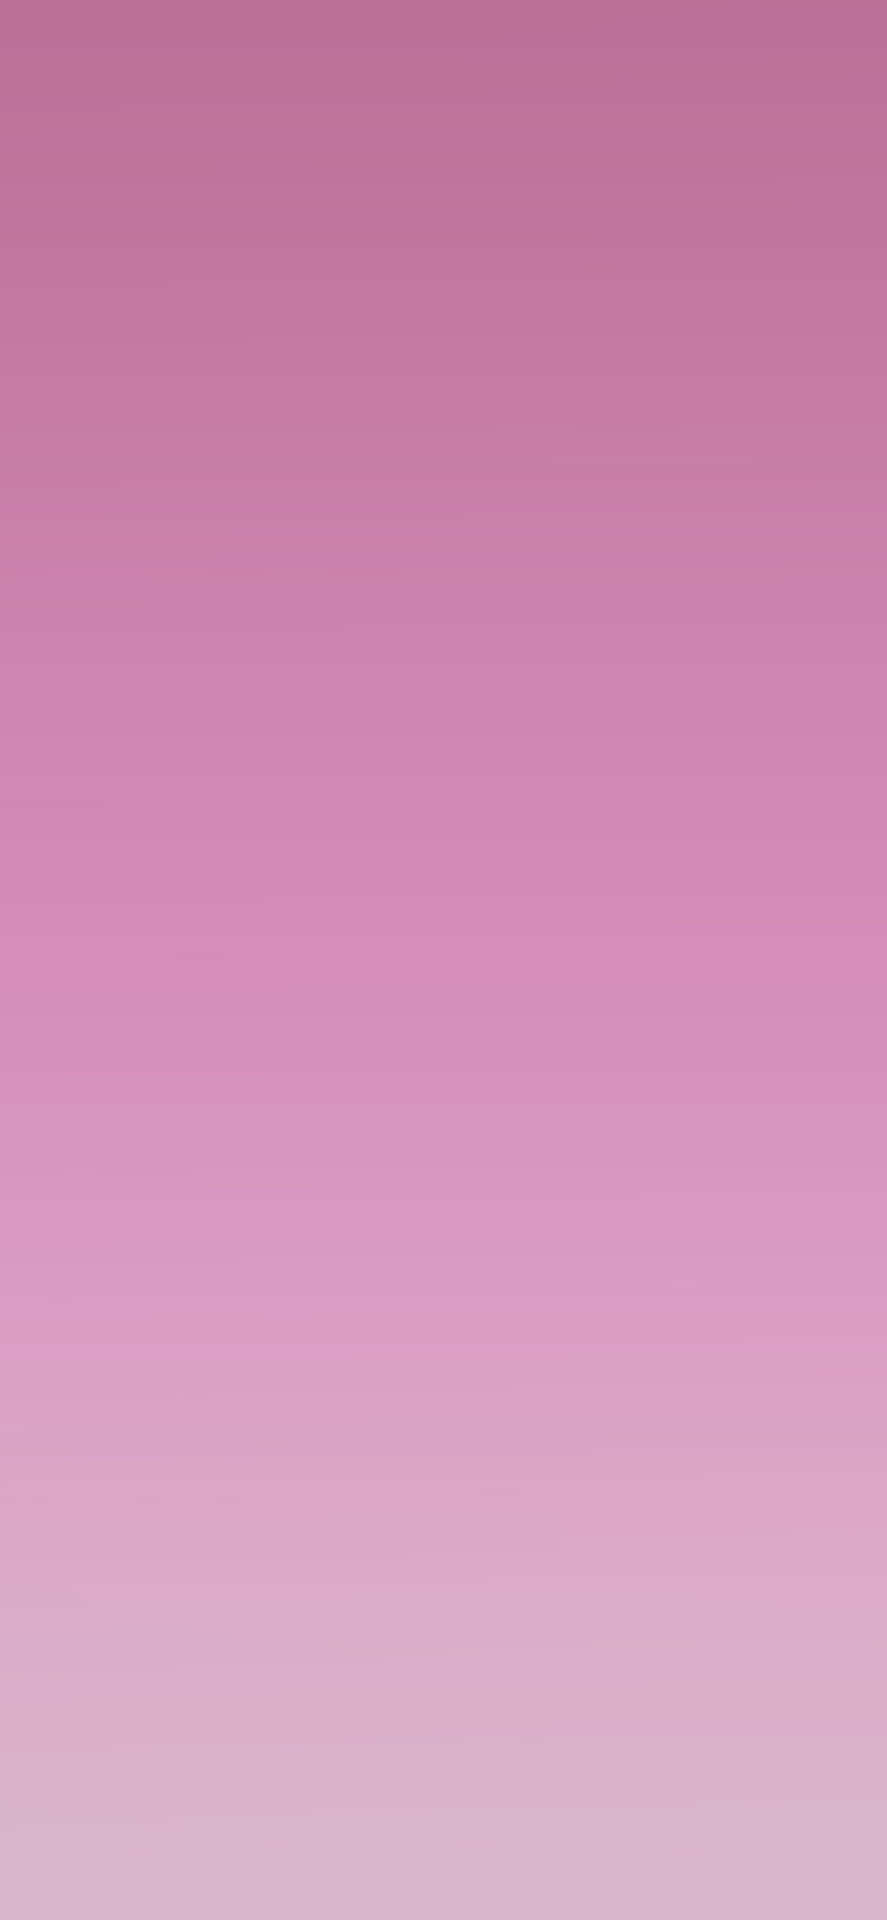 Soft Pink 1125 X 2436 Wallpaper